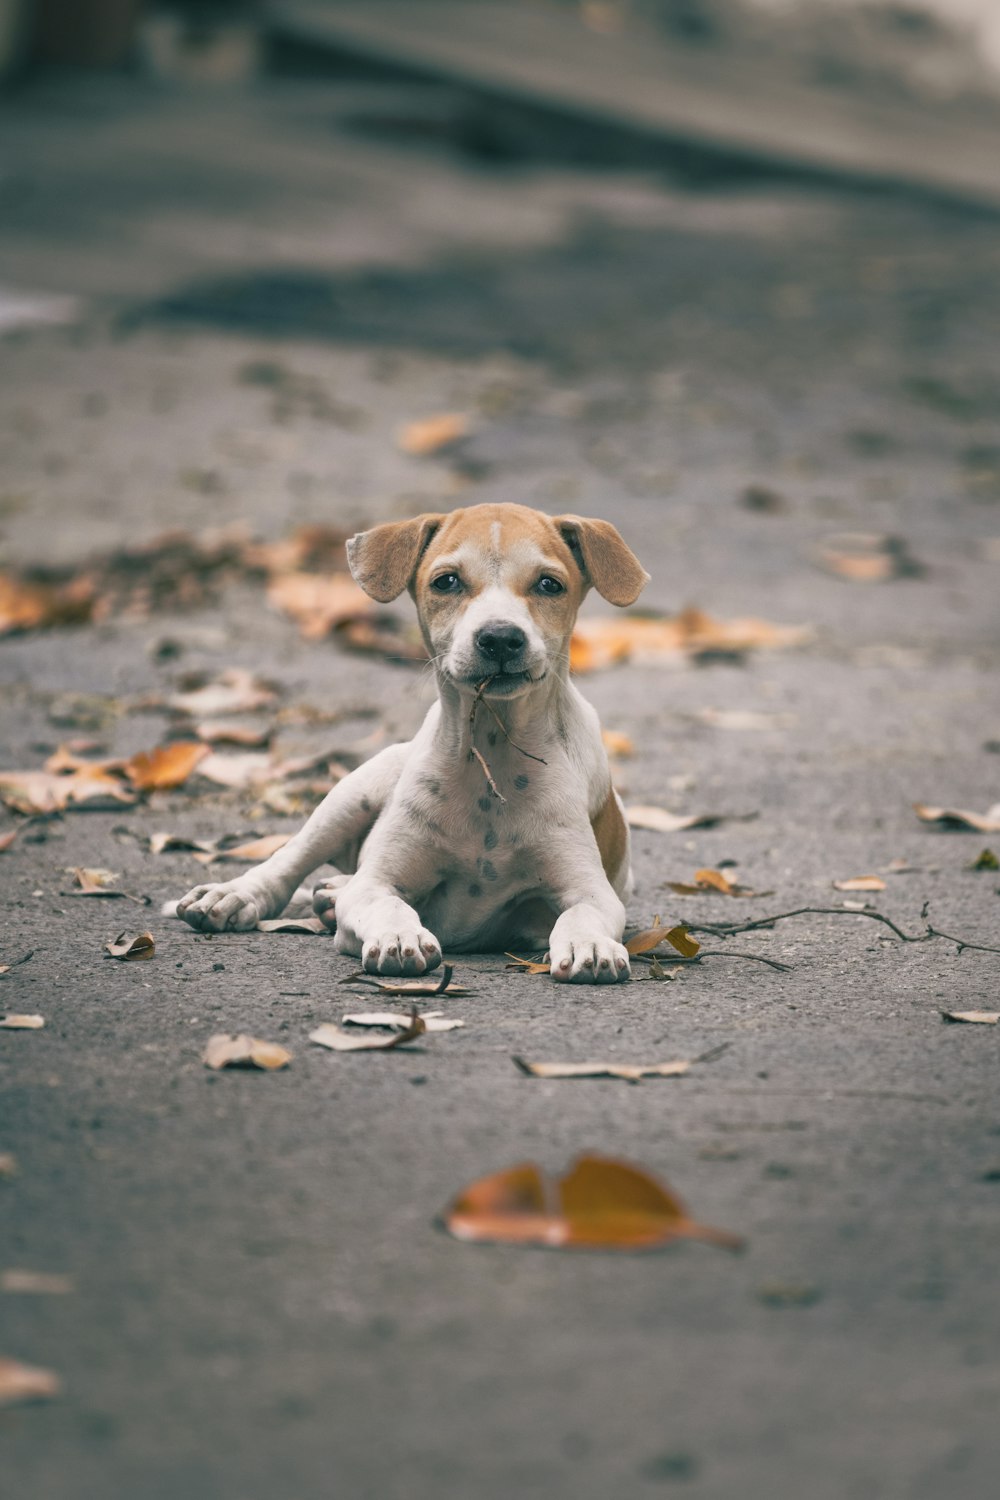 un pequeño perro marrón y blanco tirado en el suelo